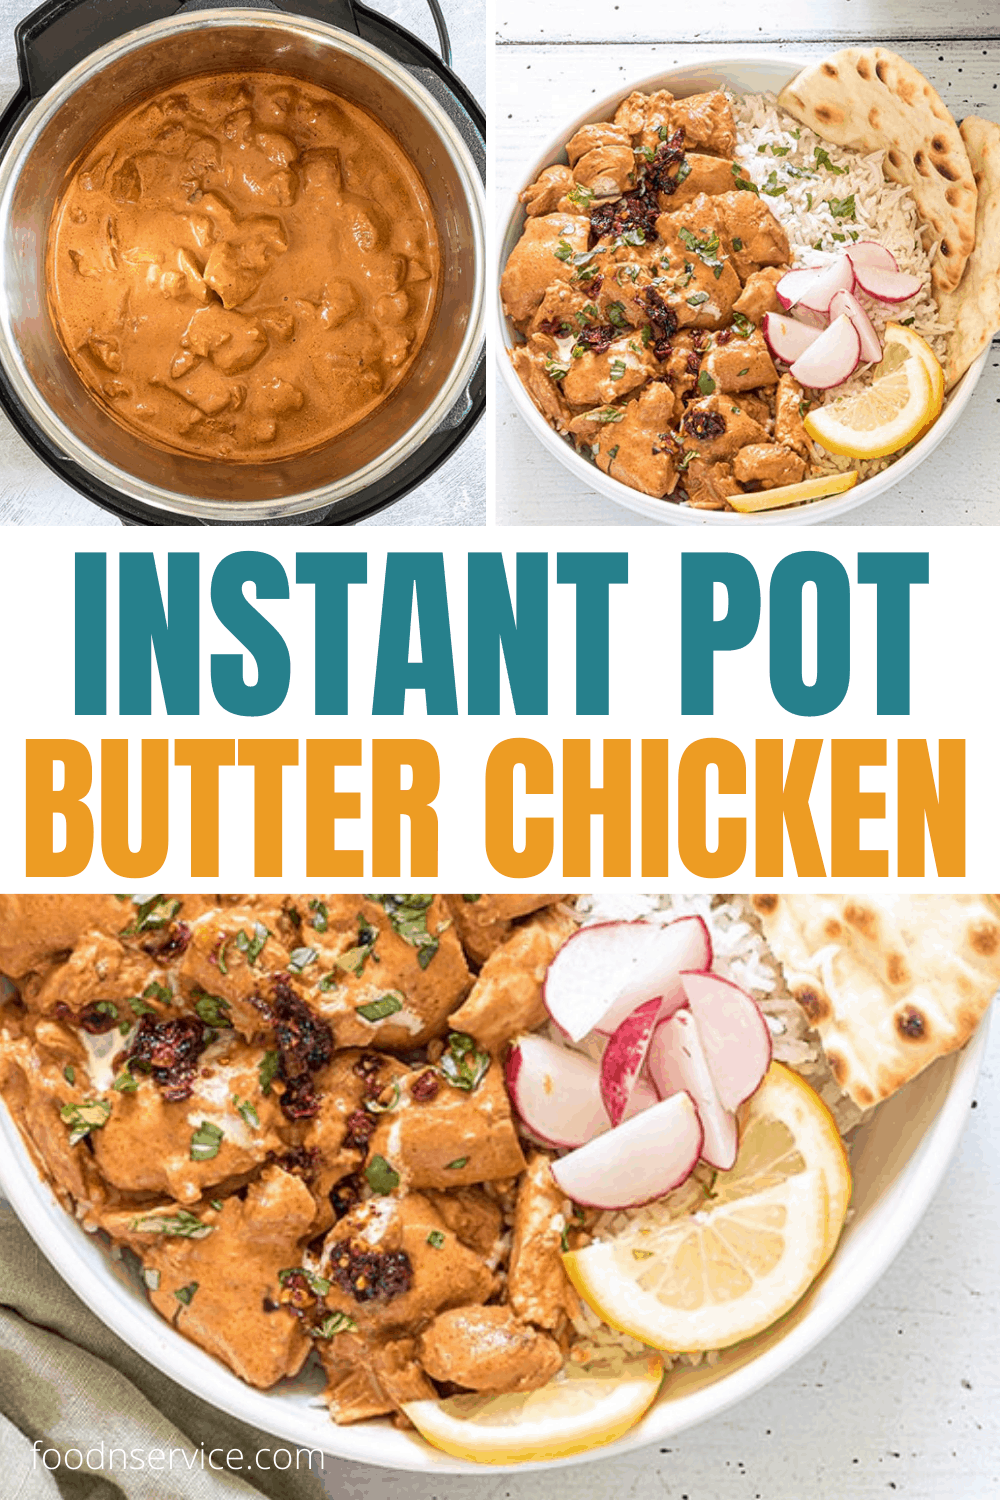 Instant Pot Butter Chicken